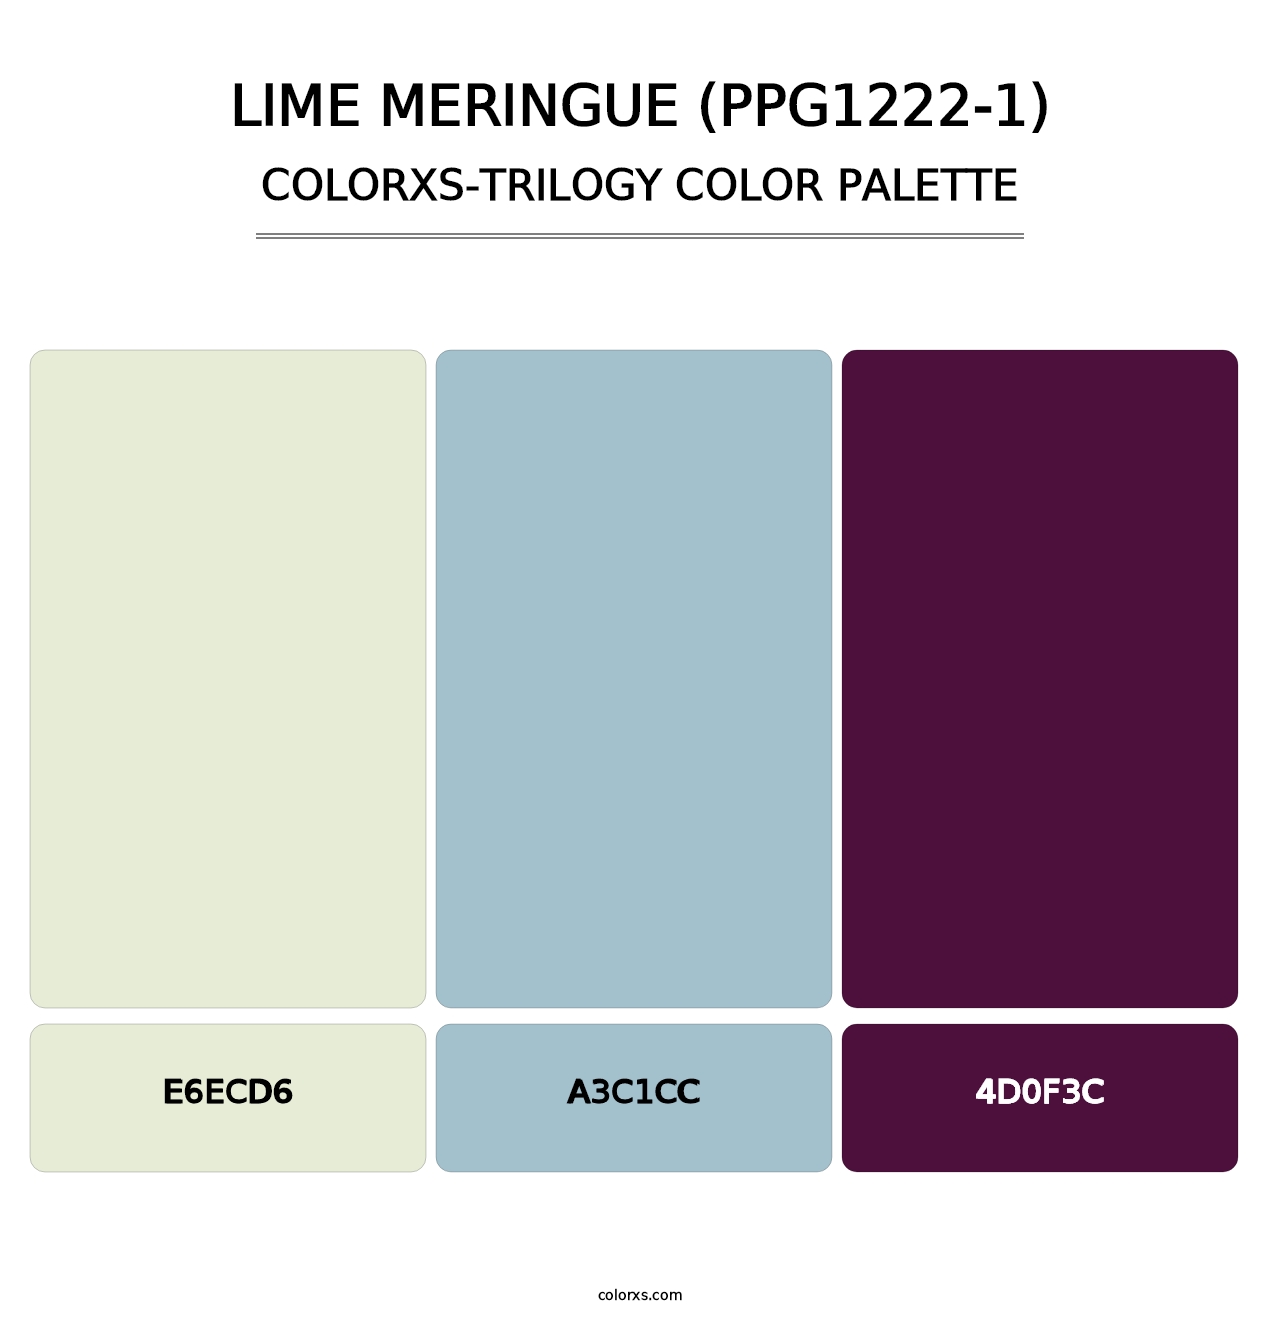 Lime Meringue (PPG1222-1) - Colorxs Trilogy Palette